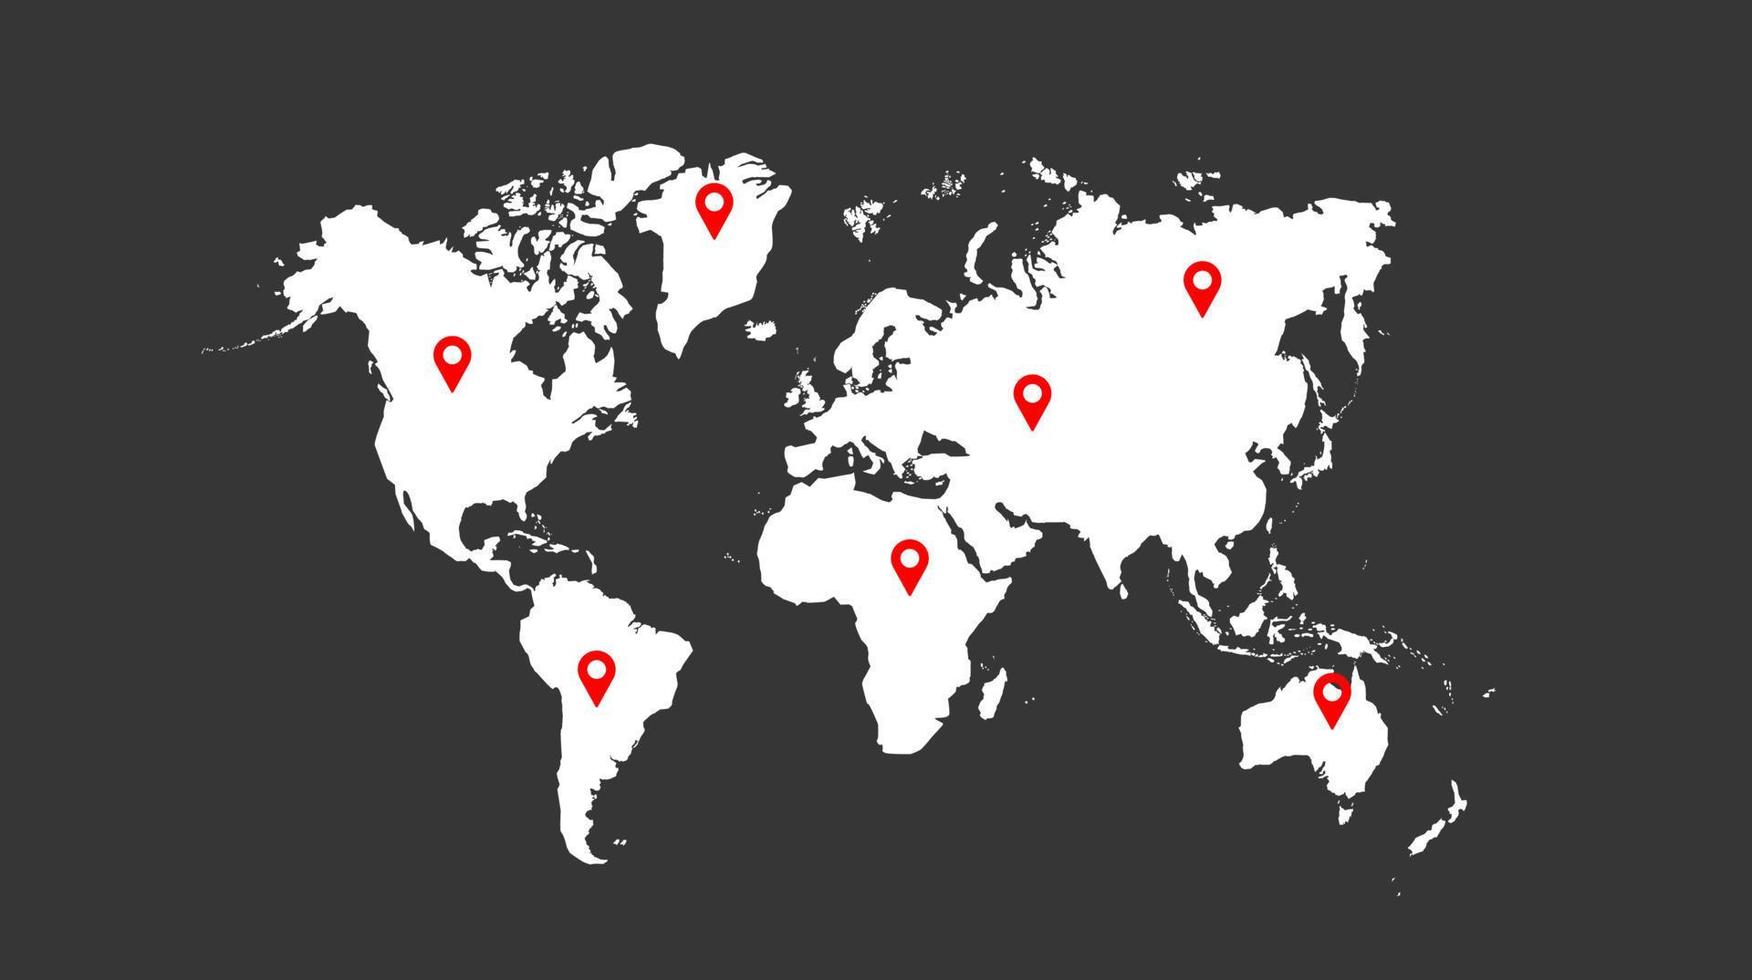 Welt Karte mit Ort Symbol Vektor Illustration. Welt Karte Vorlage mit Kontinente, Norden und Süd Amerika, Europa und Asien, Afrika und Australien